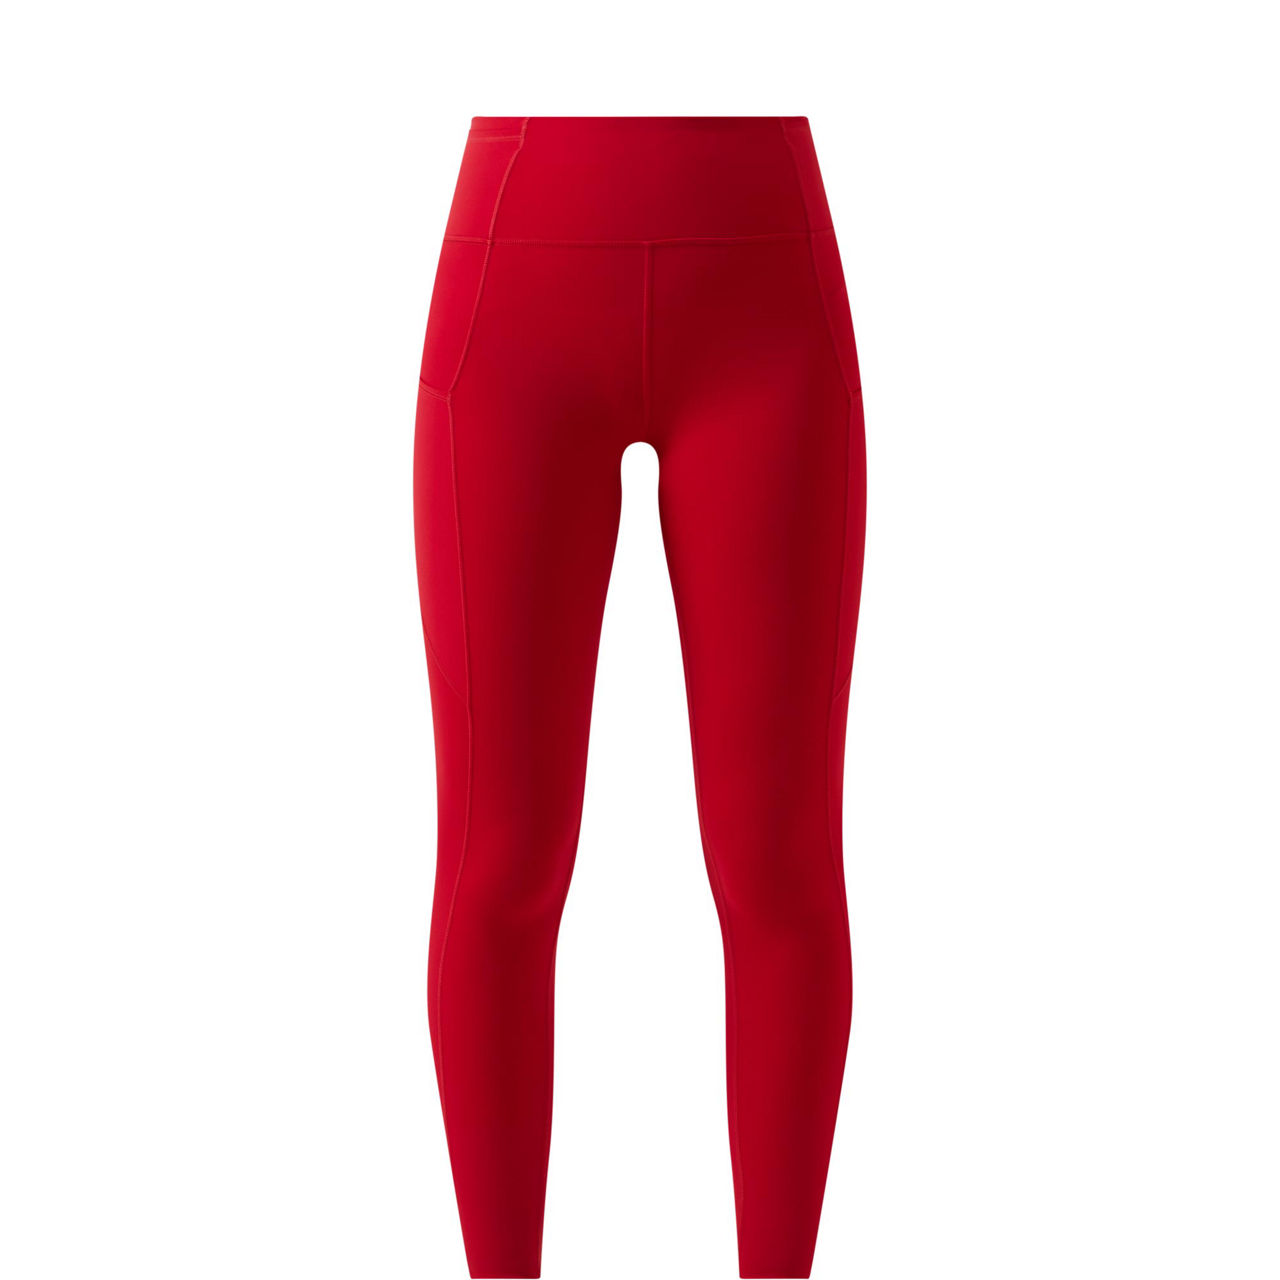 Kjøp Tom Joule Festive Lively Leggings 2-pack, Red